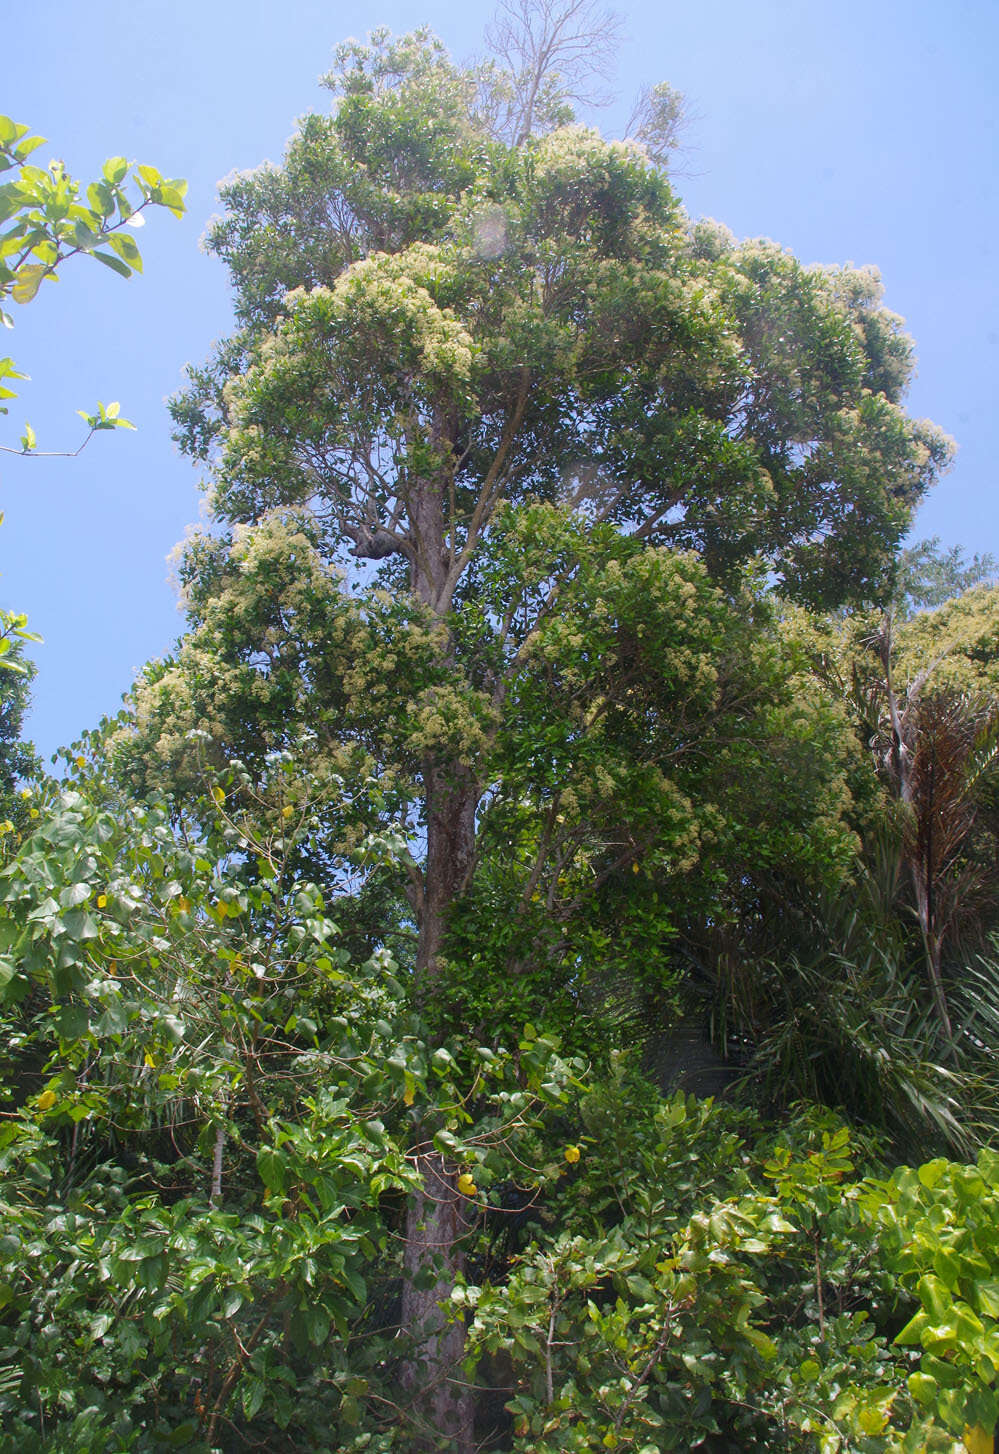 Image of Syzygium hemilamprum subsp. hemilamprum